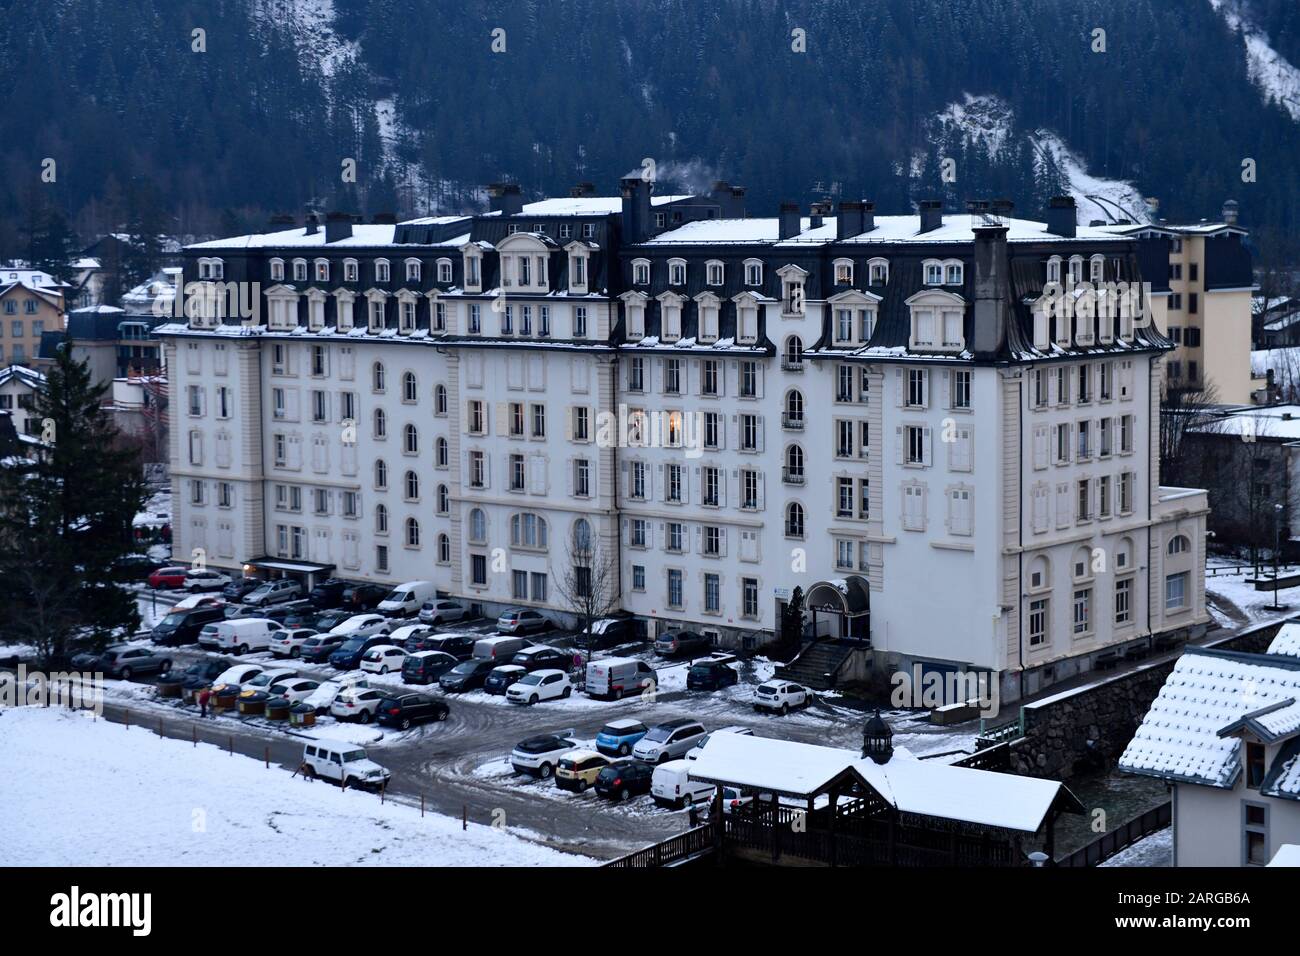 Das Alpine Museum Belle Epoque befindet sich in der alten Chamonix, der Haute-Savoie, den französischen Alpen, Frankreich und Europa. Stockfoto